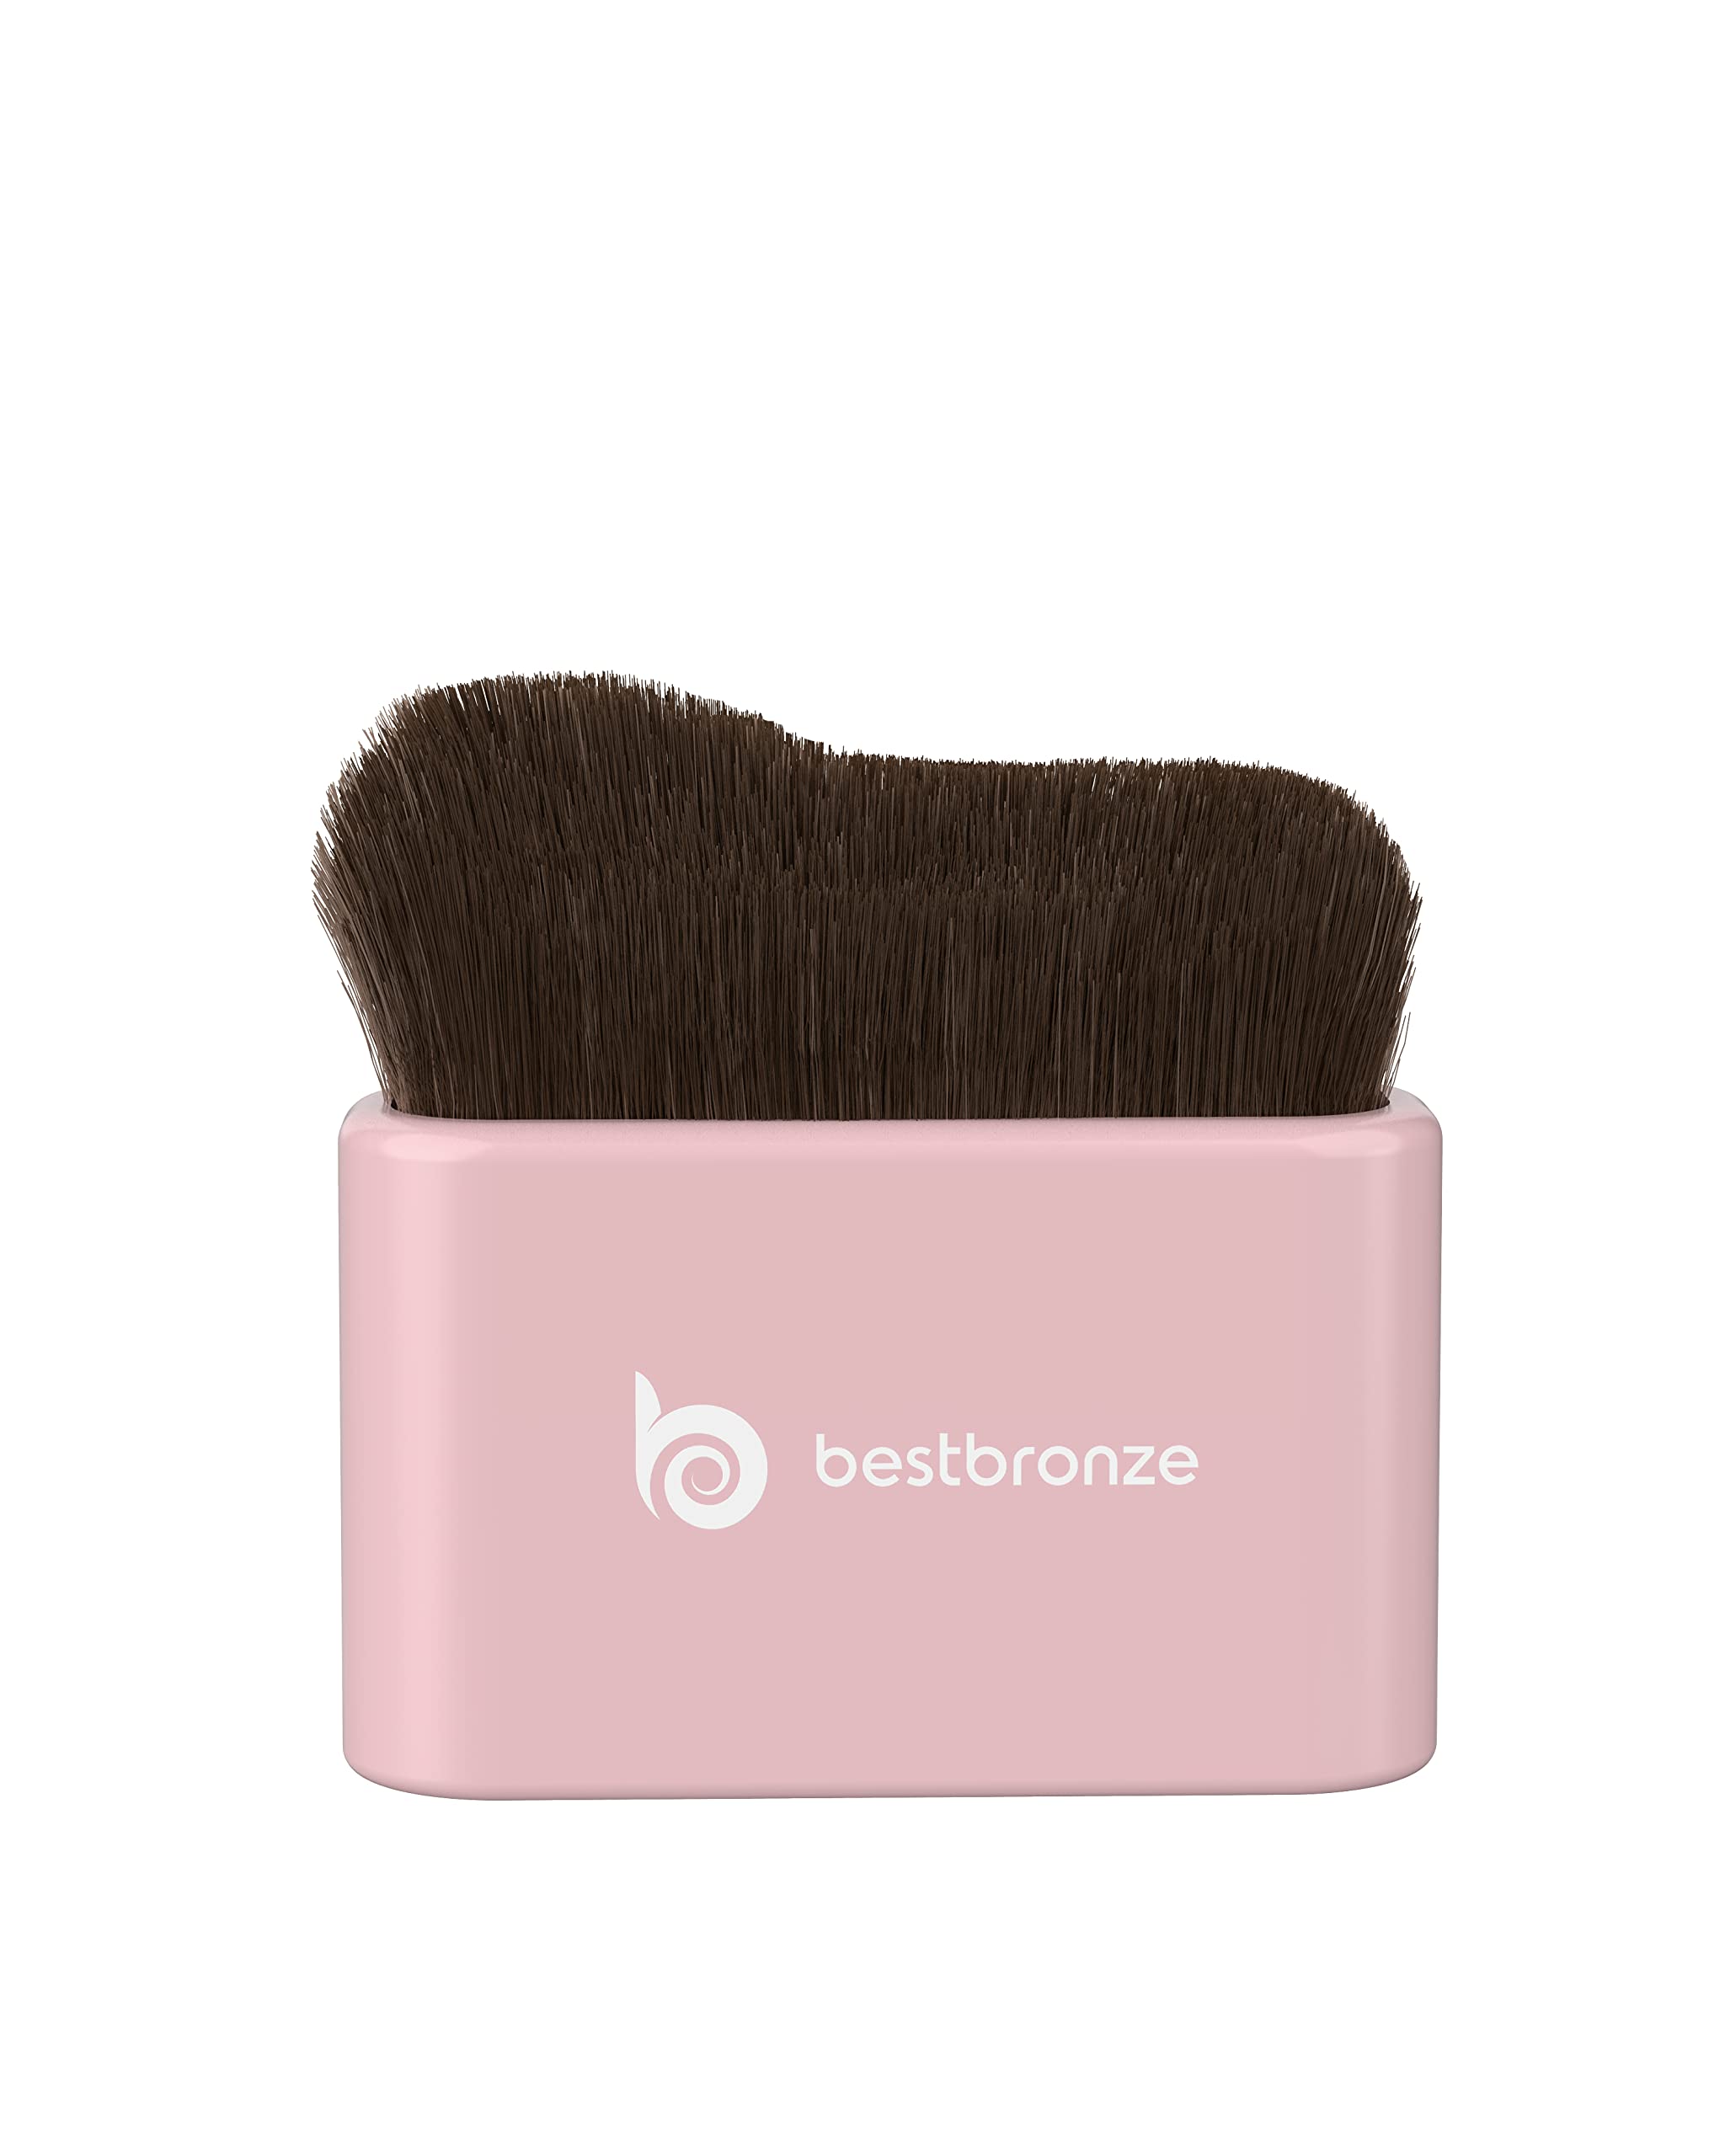 Best Makeup Brush for Blending Foundation